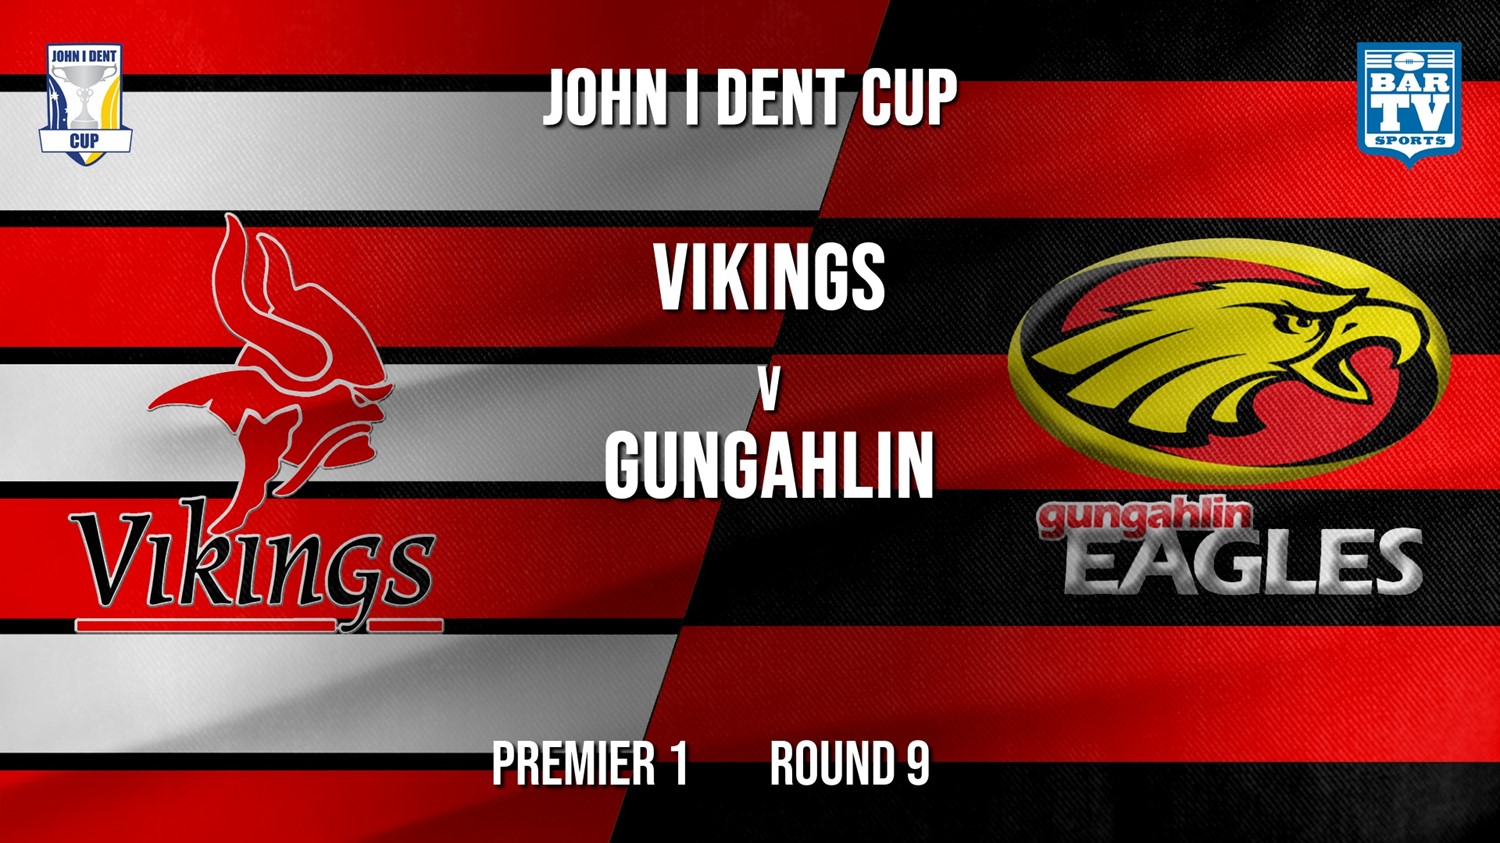 John I Dent Round 9 - Premier 1 - Tuggeranong Vikings v Gungahlin Eagles Minigame Slate Image